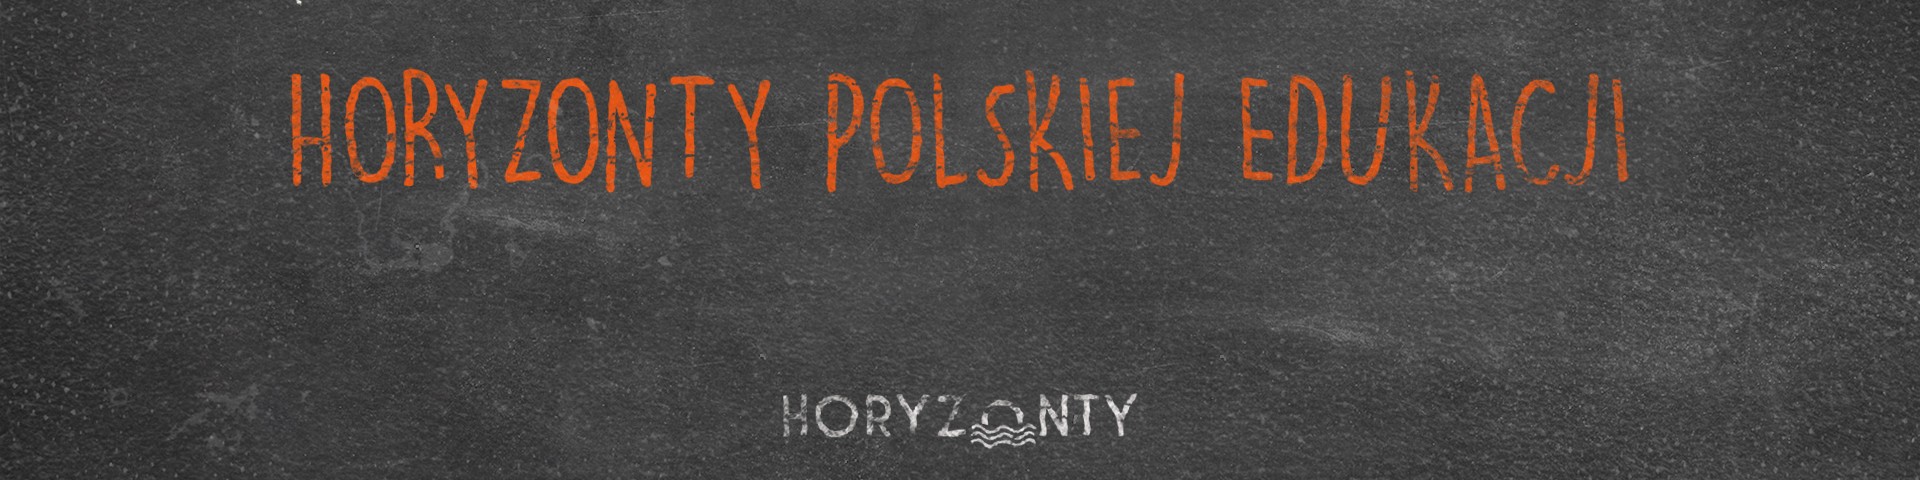 Horyzonty polskiej edukacji – sztuczne problemy